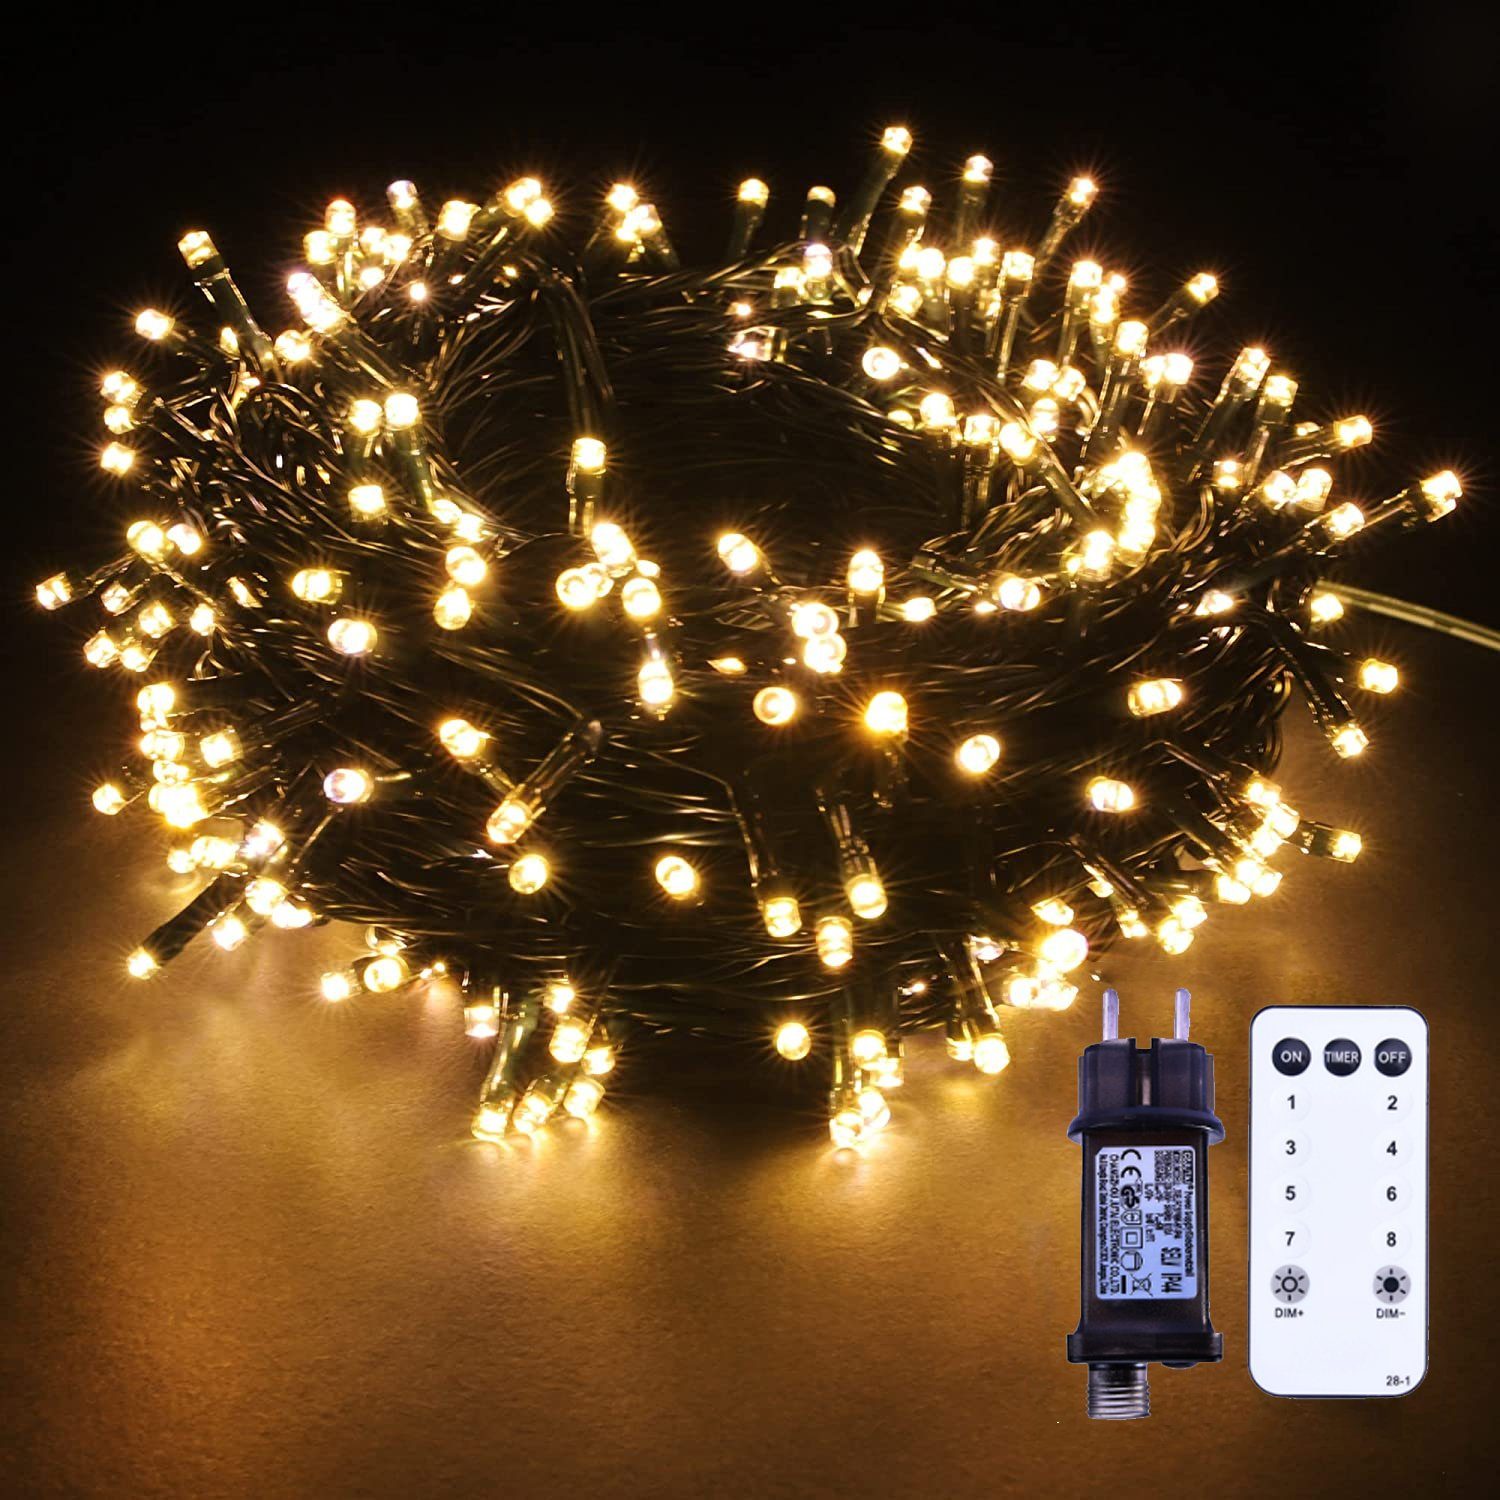 XERSEK LED Dekoobjekt 20m LED Lichterkette Warmweiß Cluster Büschelkette  mit Fernbedienung, Warmweiß, 8Modi Dimmbar Timer 31V, Gartenbeleuchtung,  Außen Garten Weihnachtsbaum Büschel-Lichterkette